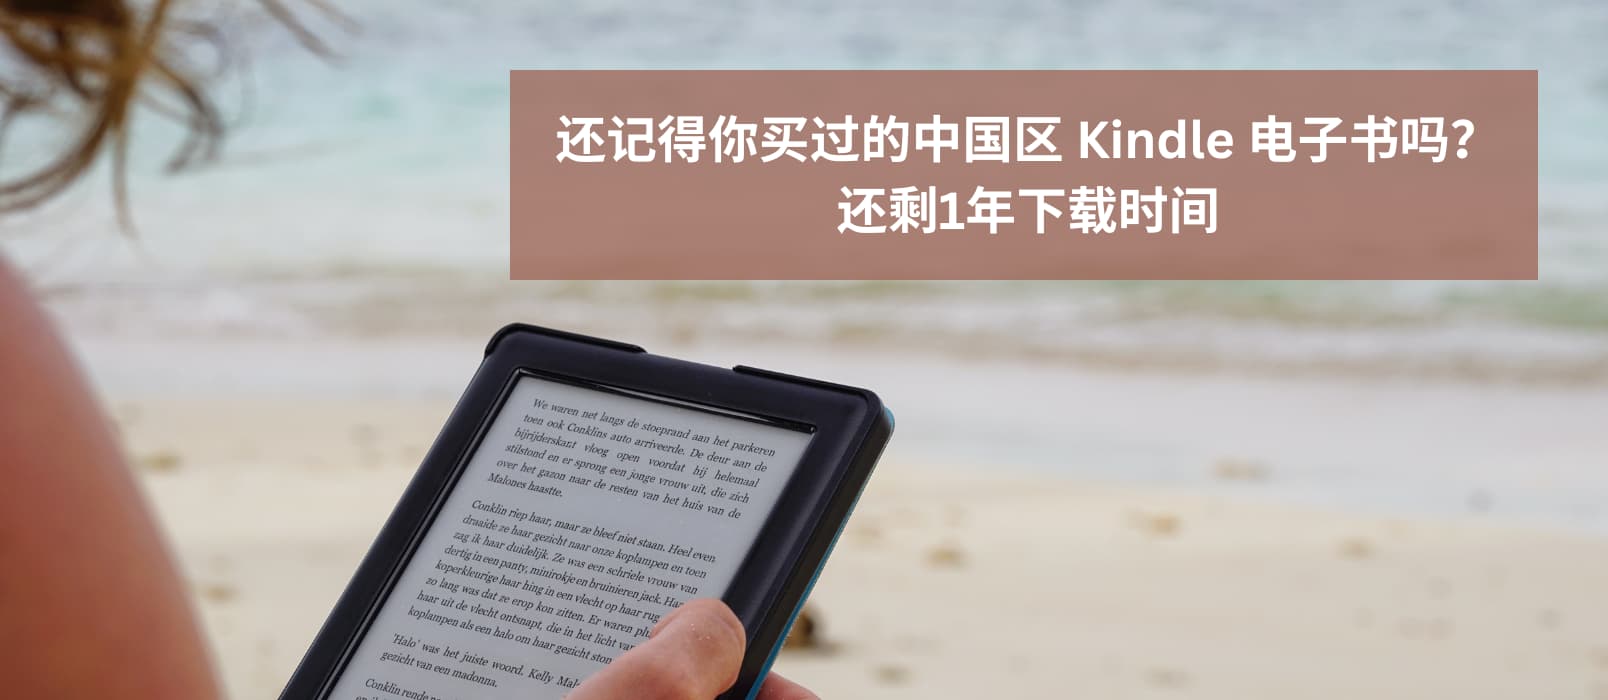 Kindle 中国电子书点停止服务还剩 1 年，是时候去下载那些买过的Kindle 中国区电子书了 1